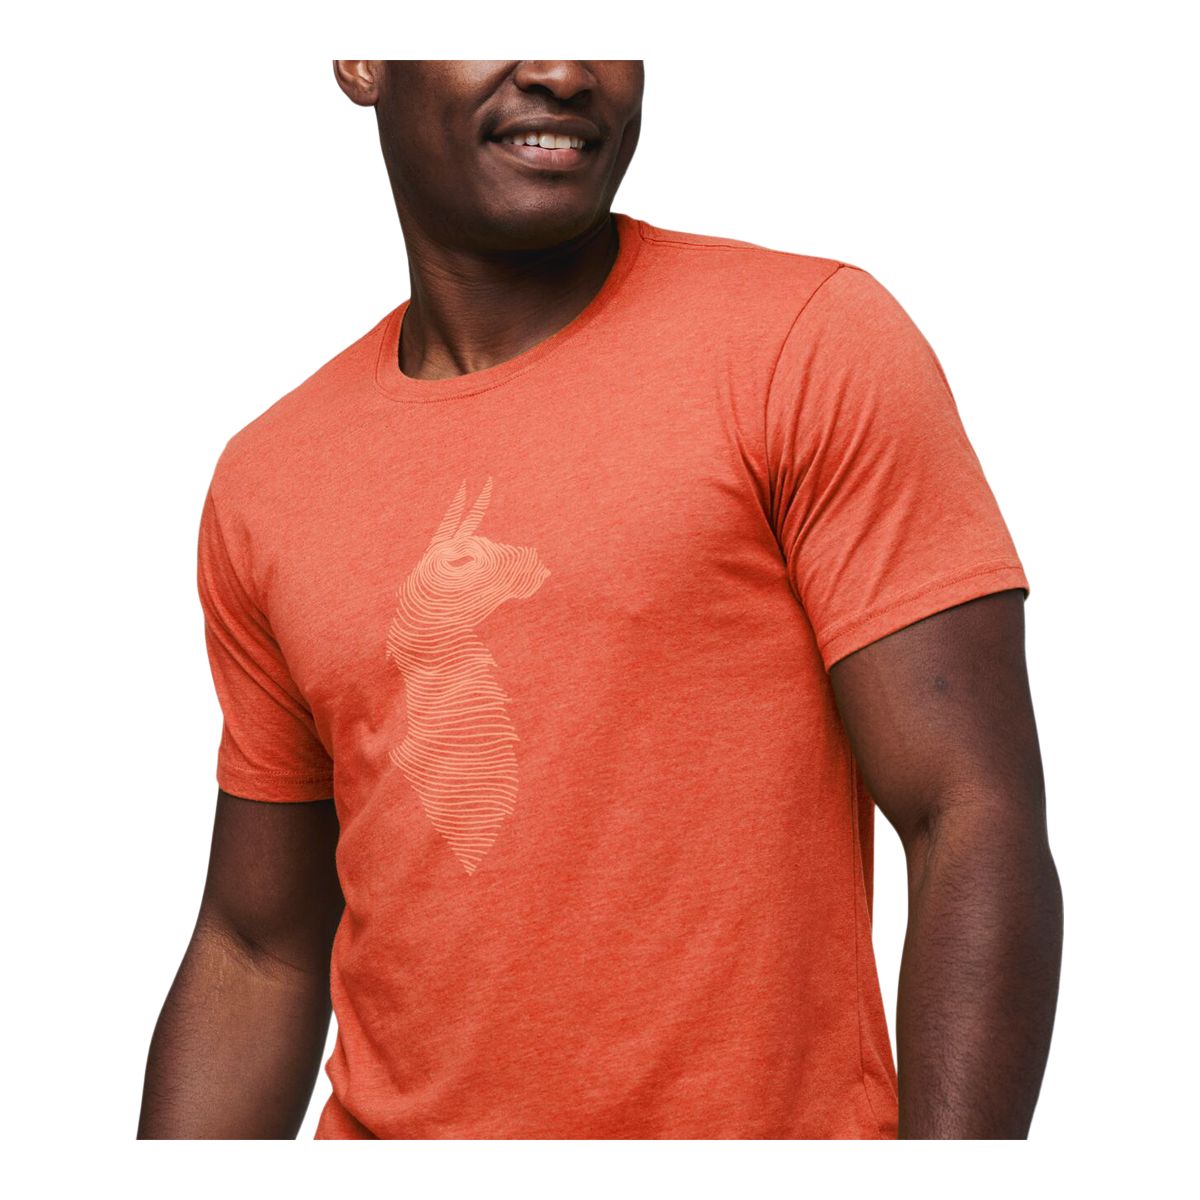 Men's Lightwire Tech T-Shirt